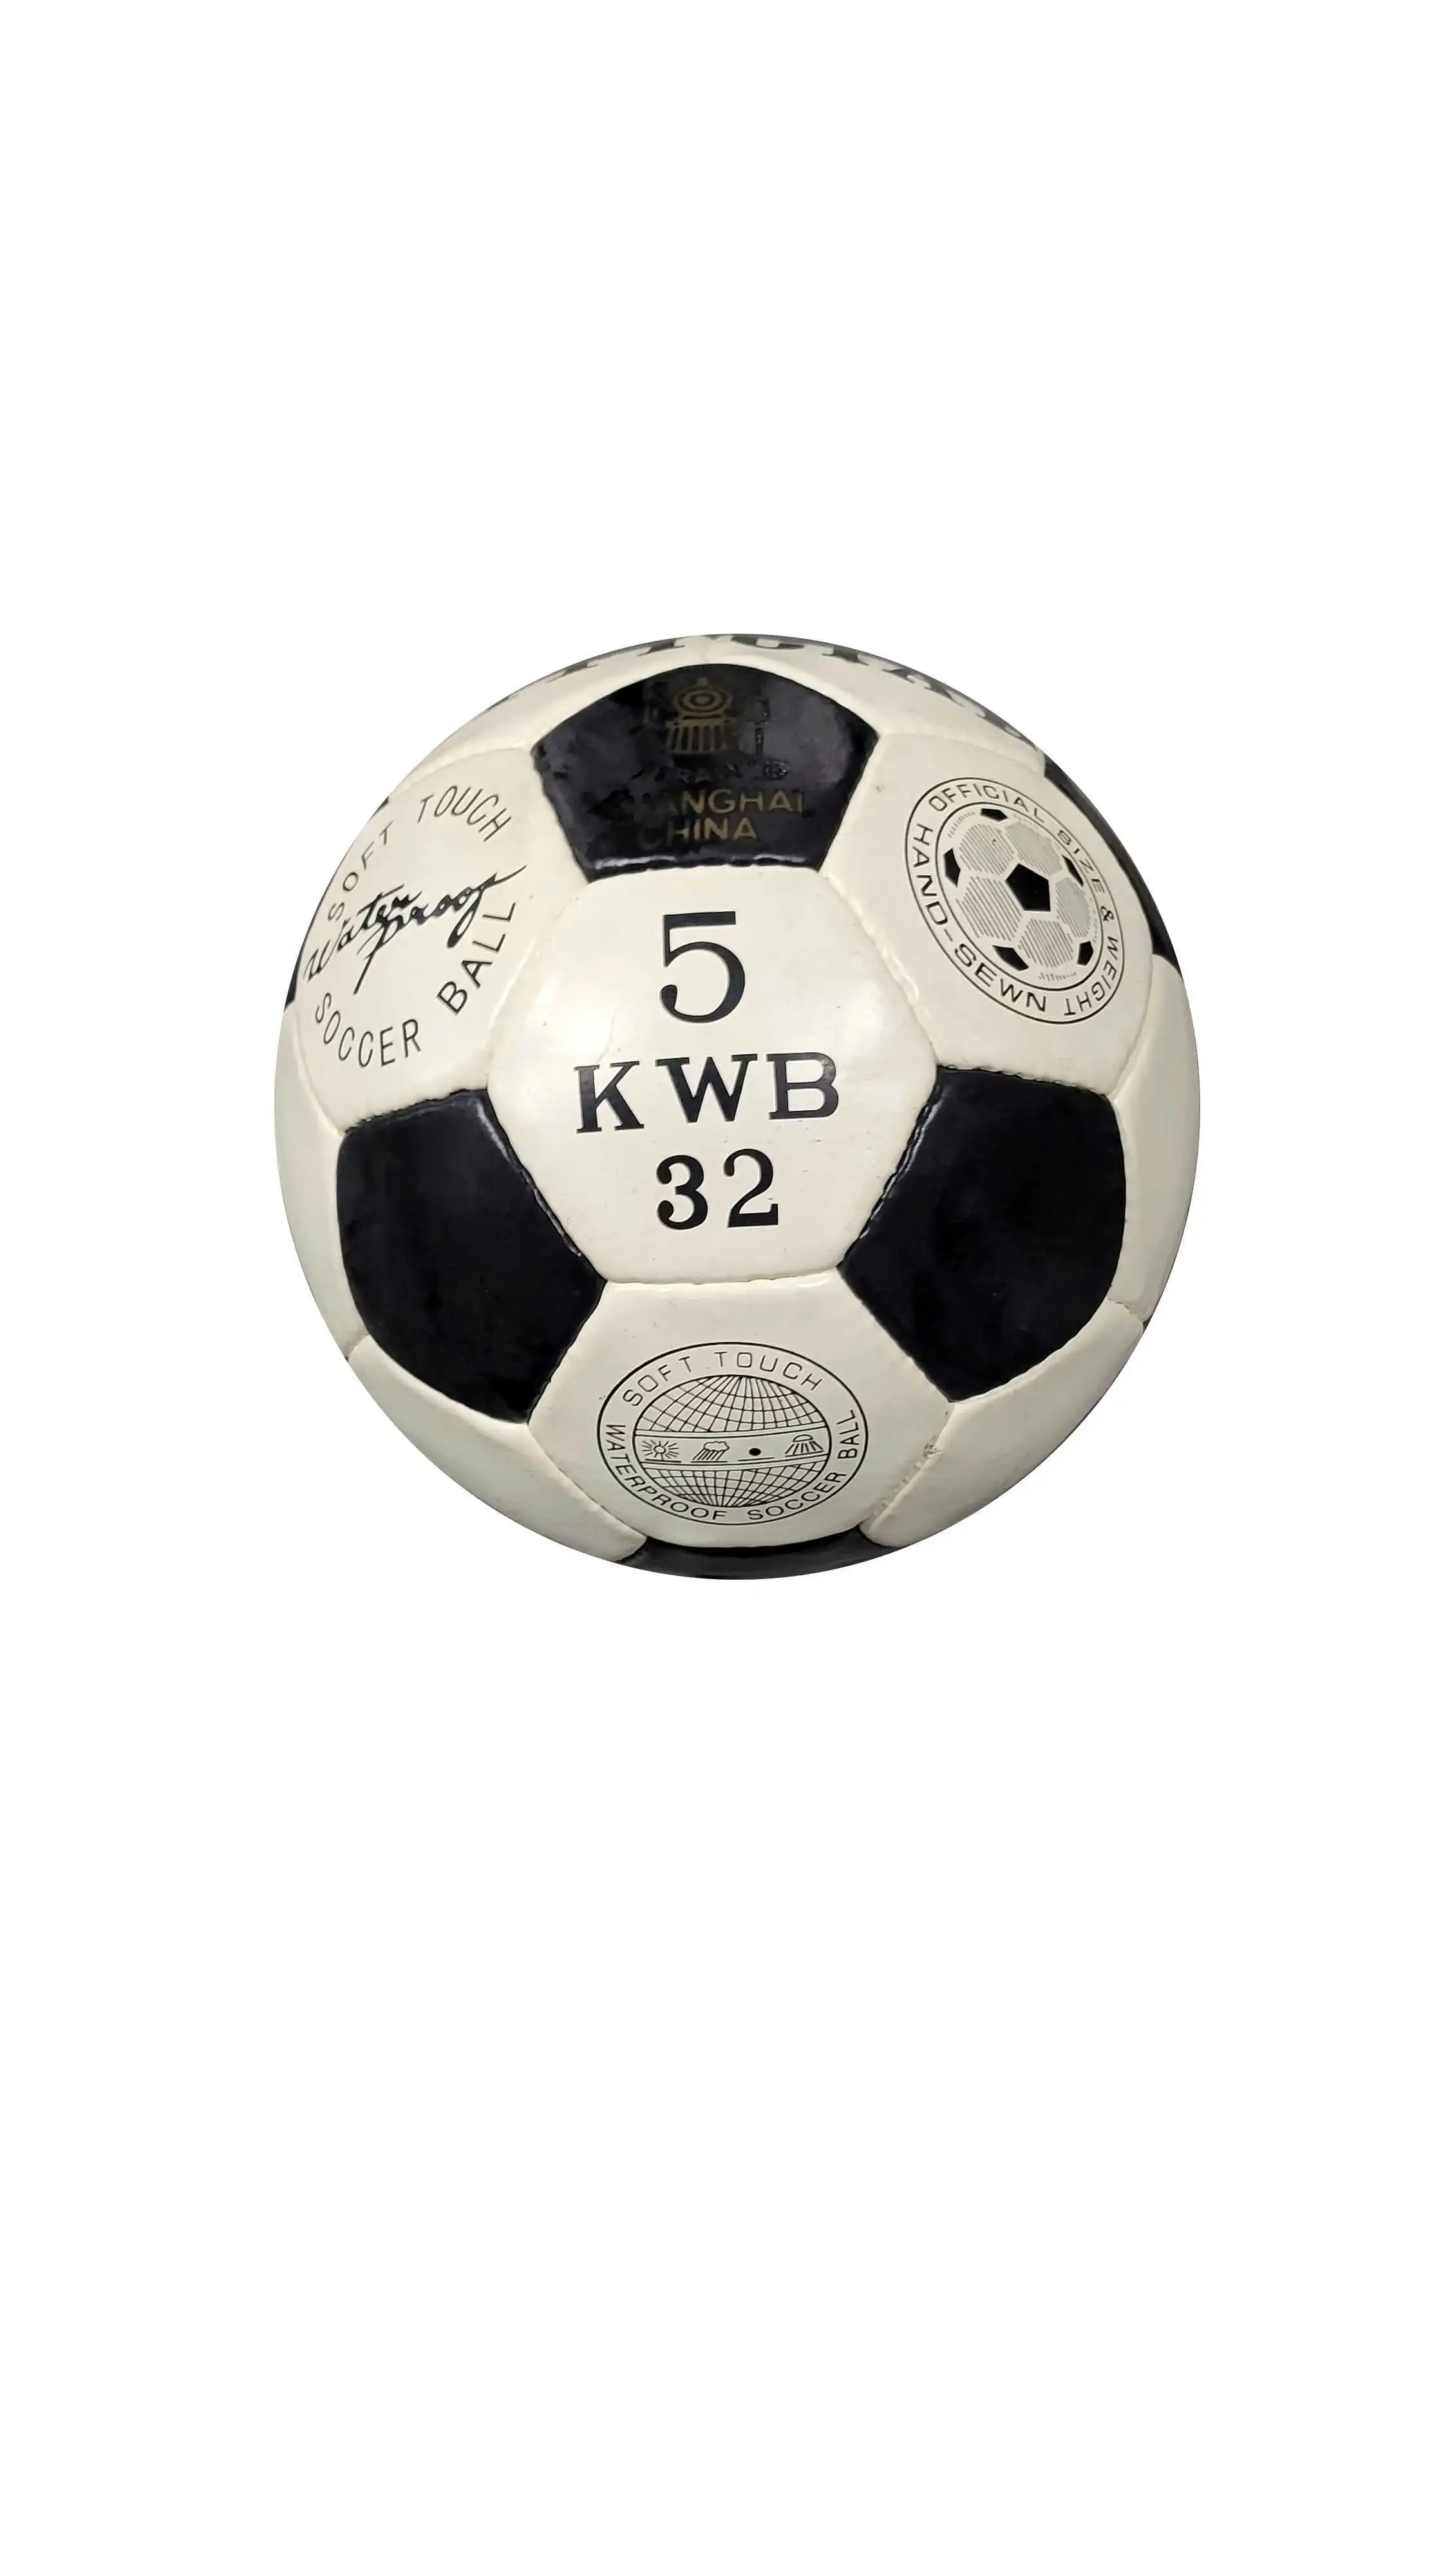 BALLSTRIKE Soccer ball-5 KWB 32